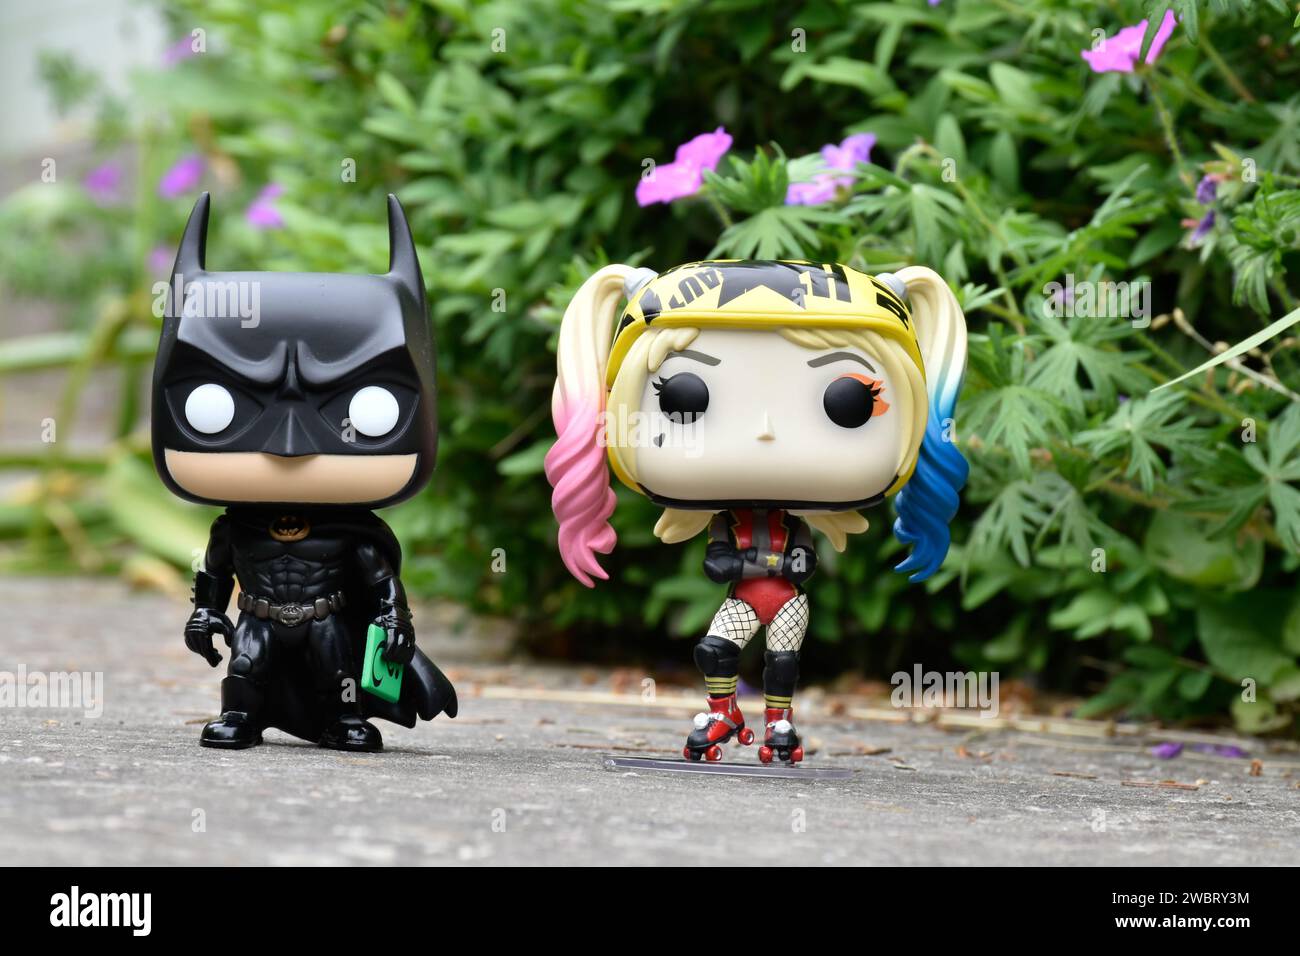 Funko Pop Actionfiguren der DC-Comic-Superhelden Batman und Harley Quinn stehen auf Asphaltstraße im Frühlingspark, grünes Gras und rosa Blumen. Stockfoto